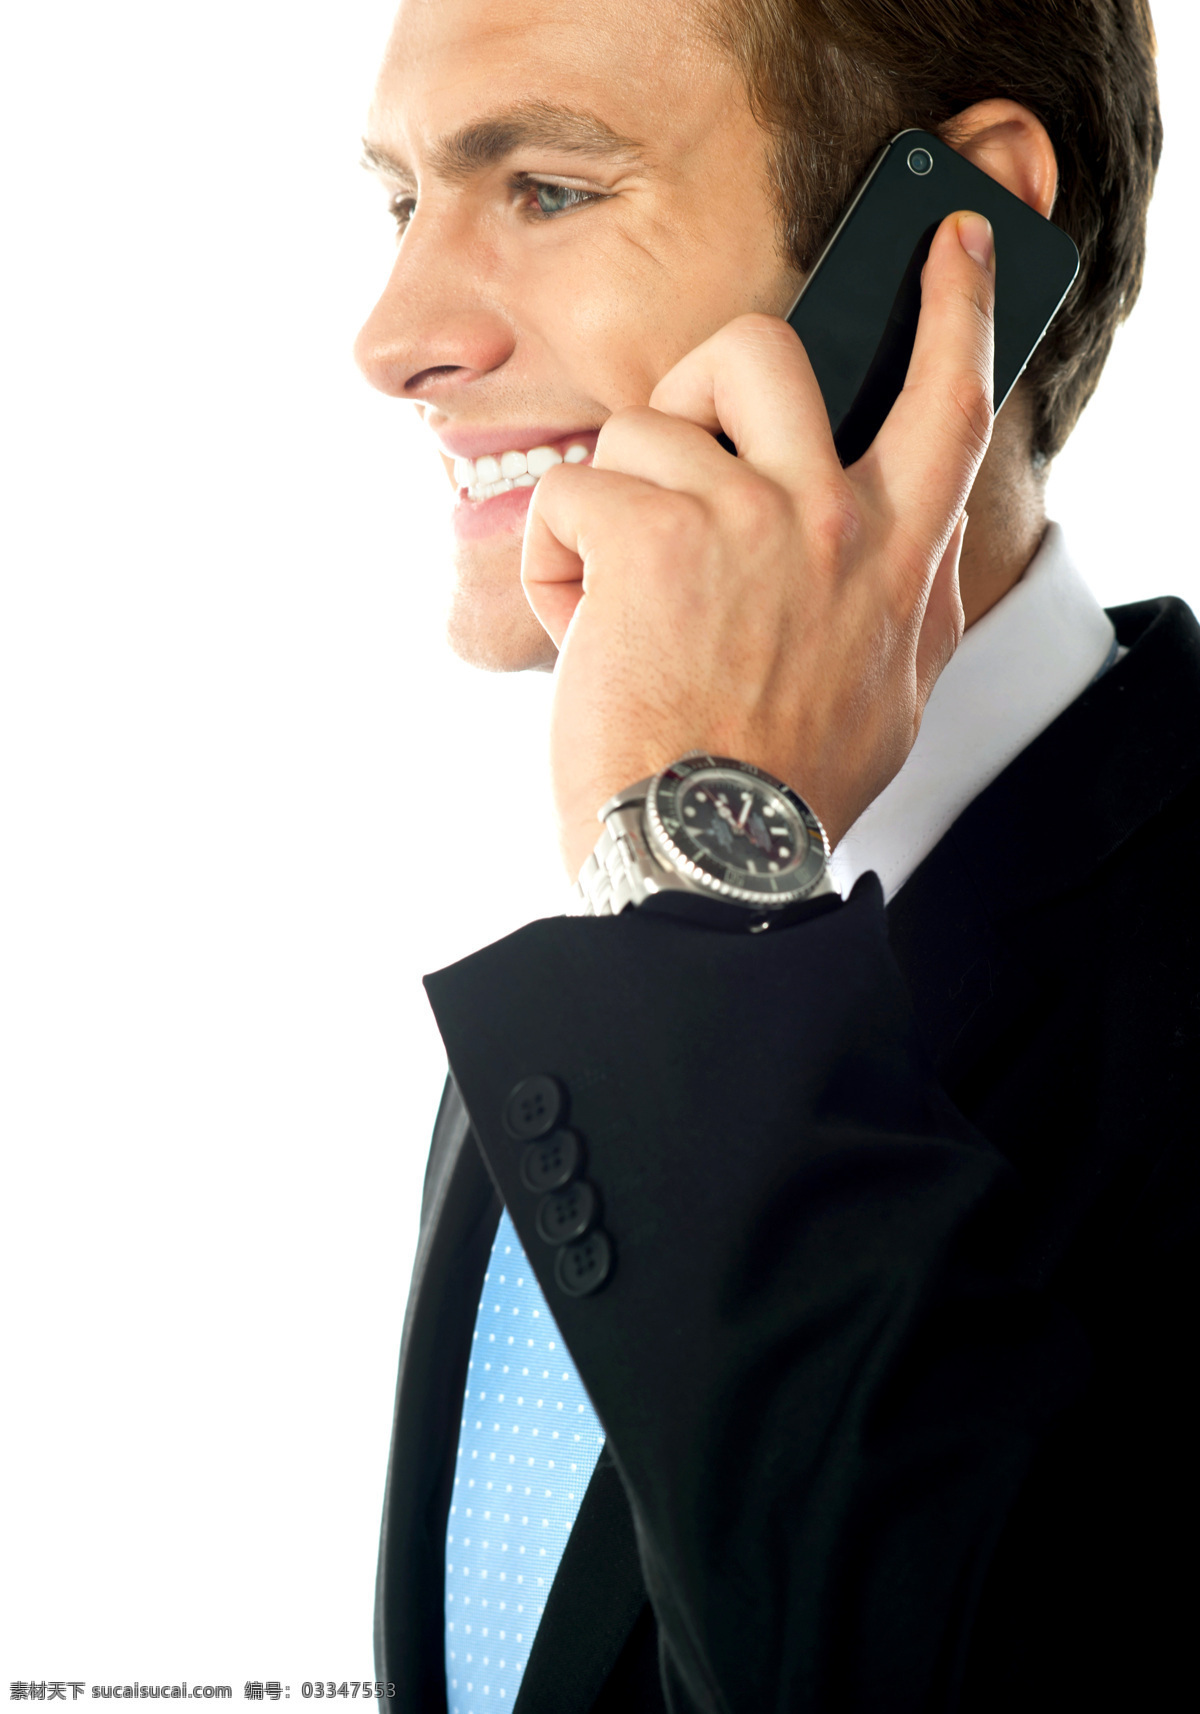 打电话 商务 男人 侧面 手机 微笑 西装领带 职业装 动作 姿势 职业 白领 商务男人 外国男人 帅哥 商务人士 人物图片